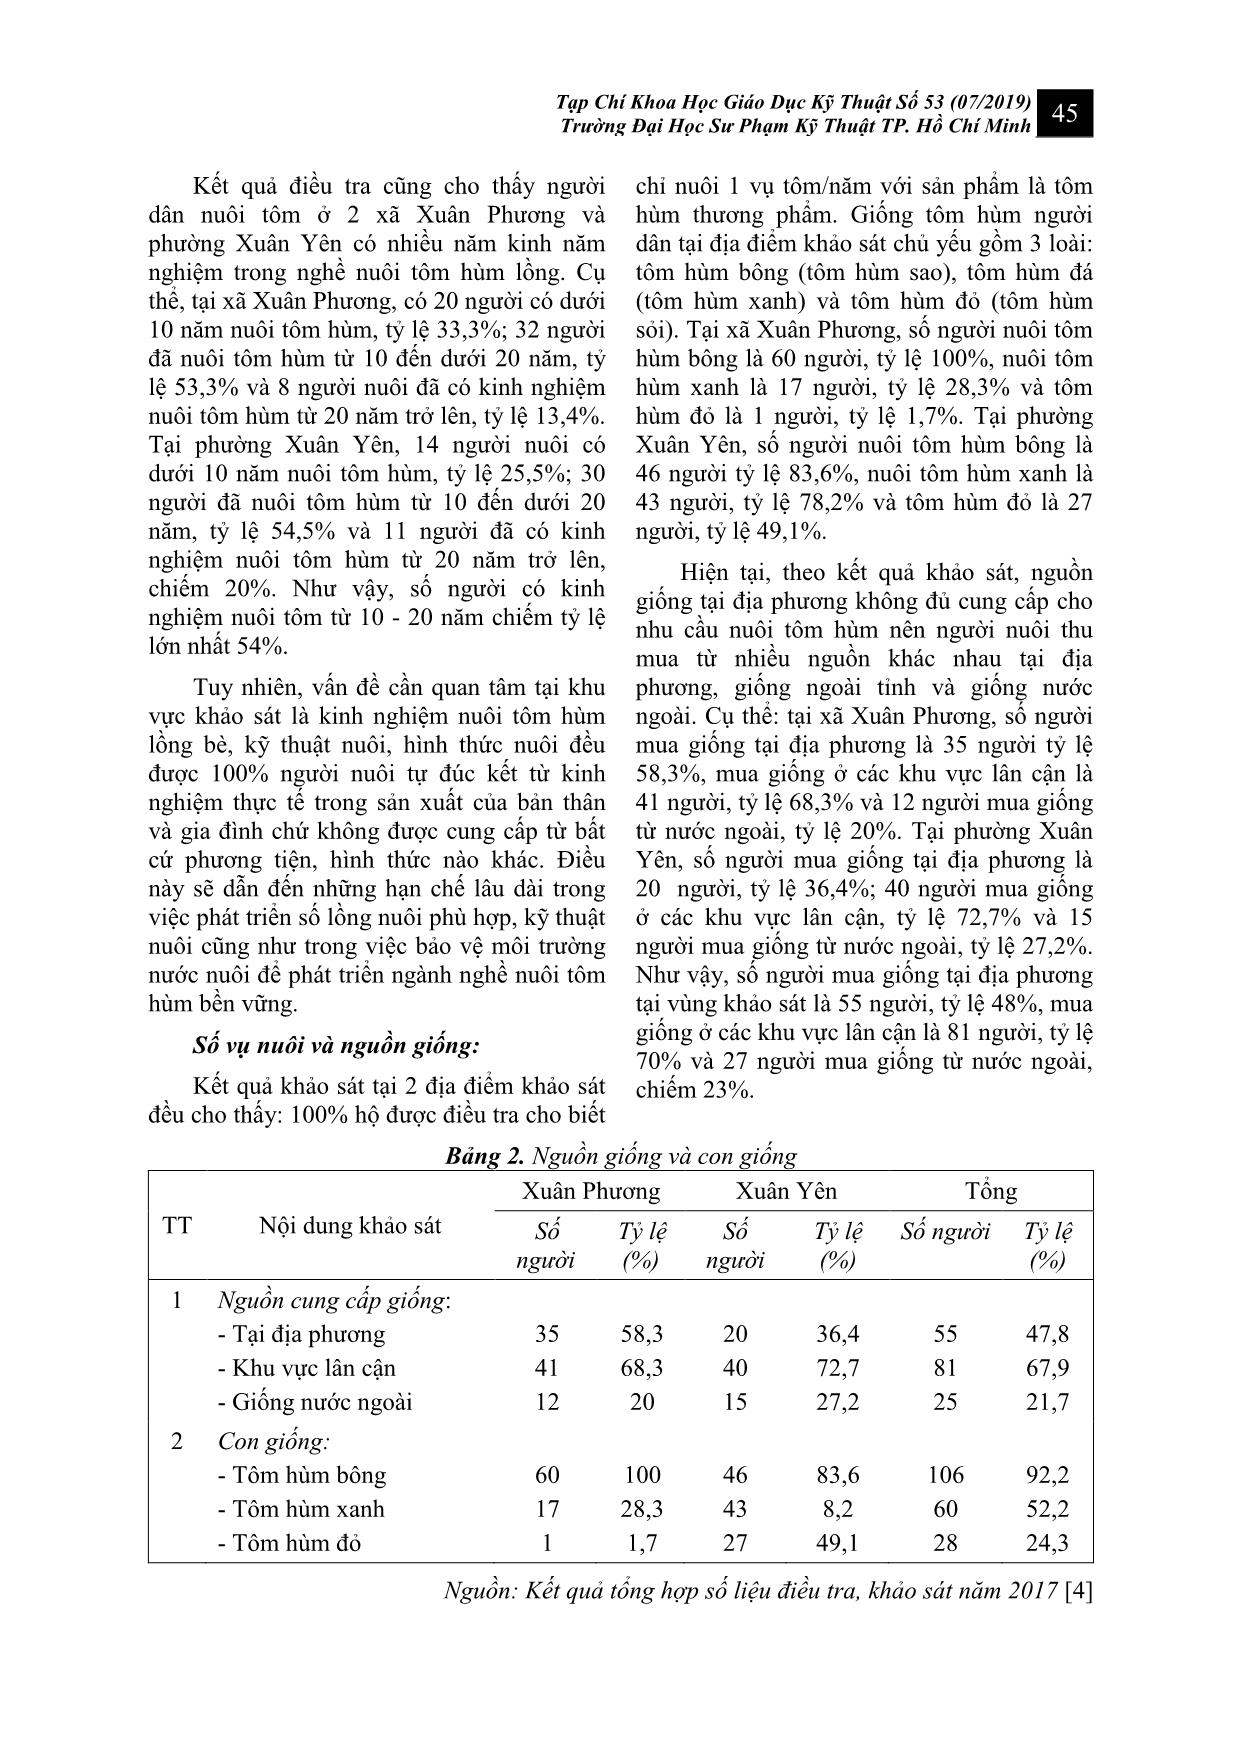 Nghiên cứu đánh giá hiện trạng và mức độ nhận thức của người nuôi tại vùng nuôi tôm hùm lồng bè thuộc vịnh Xuân Đài tỉnh Phú Yên trang 5